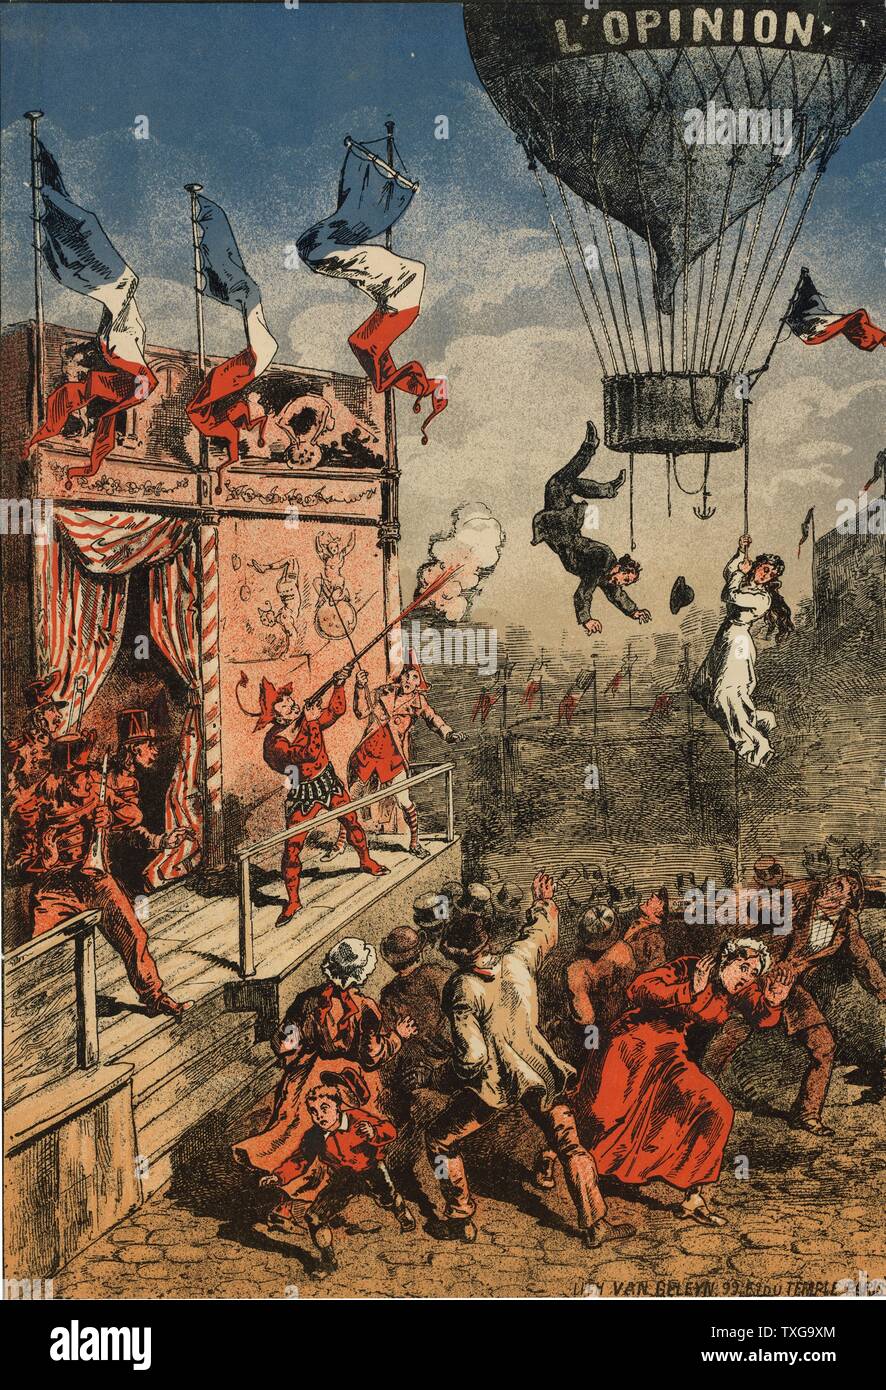 Humorvoll Drucken eines Zirkus Schauspieler auf einer Bühne schießen auf einen Ballon, mit der Beschriftung "L "Stellungnahme". Ein Mann springt von der Gondel und eine Frau klammert sich an einem Seil - 1870-1900. Stockfoto